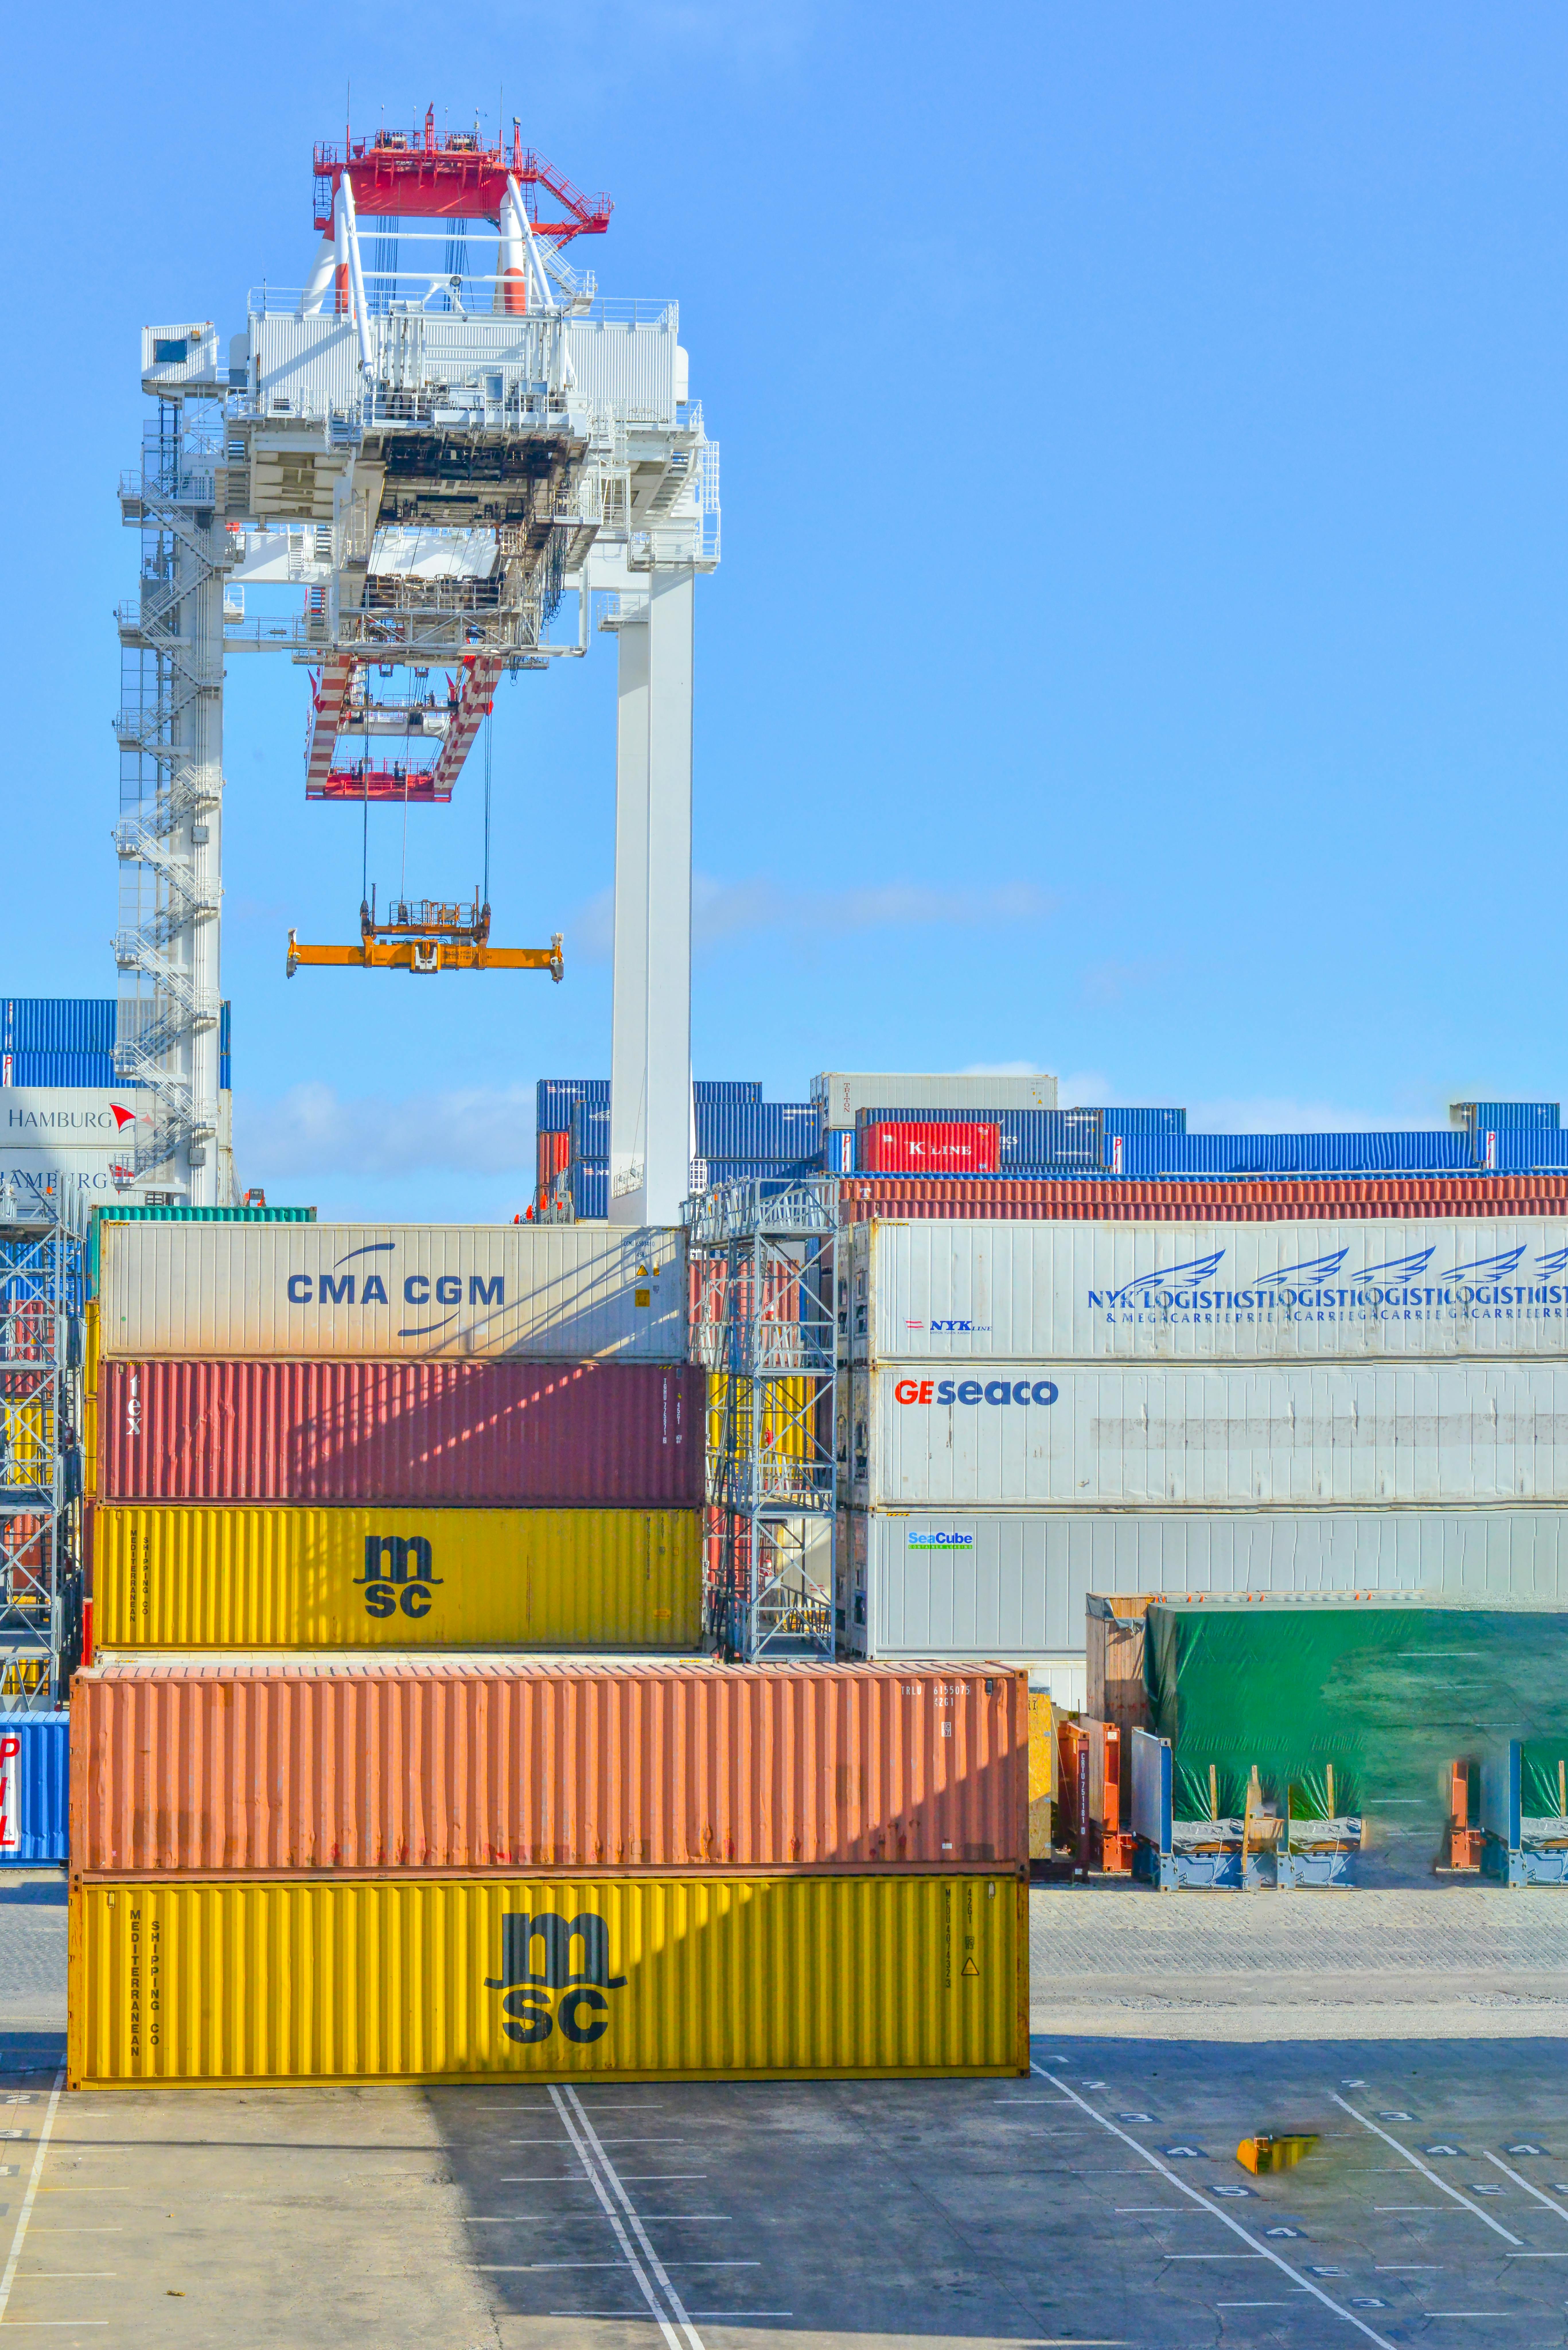 Phát triển ngành Dịch vụ logistic tại Hải Phòng trong quá trình hội nhập  kinh tế quốc tế - Tạp chí Tài chính